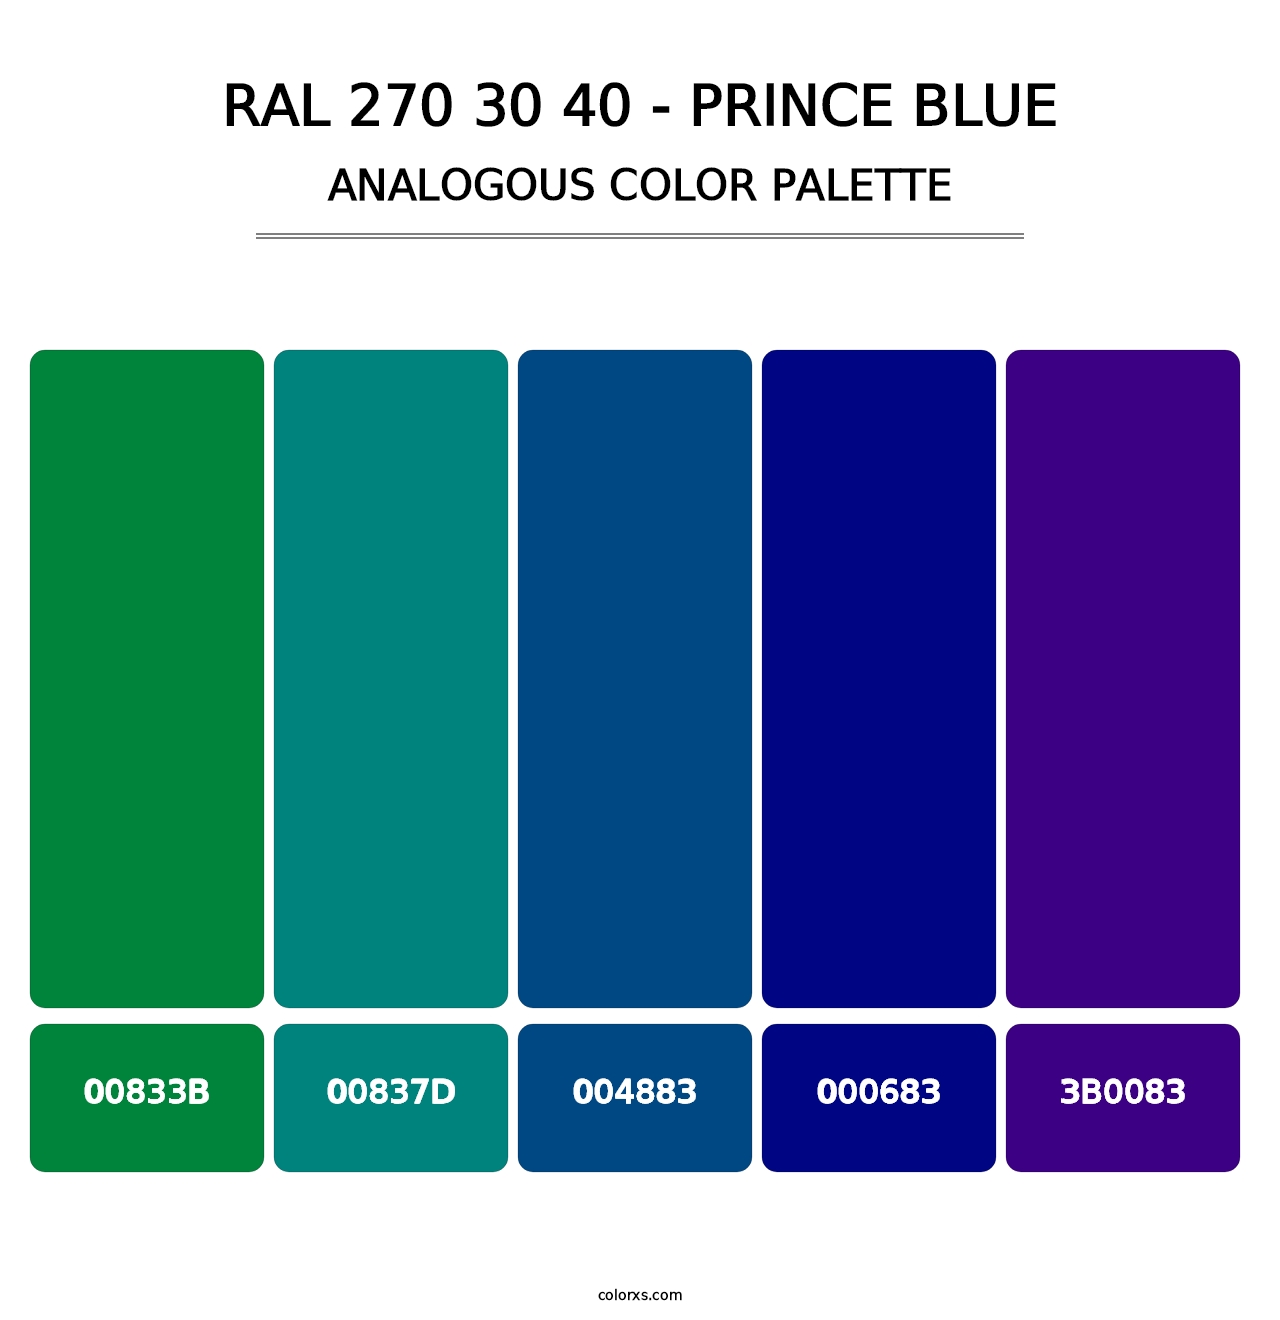 RAL 270 30 40 - Prince Blue - Analogous Color Palette